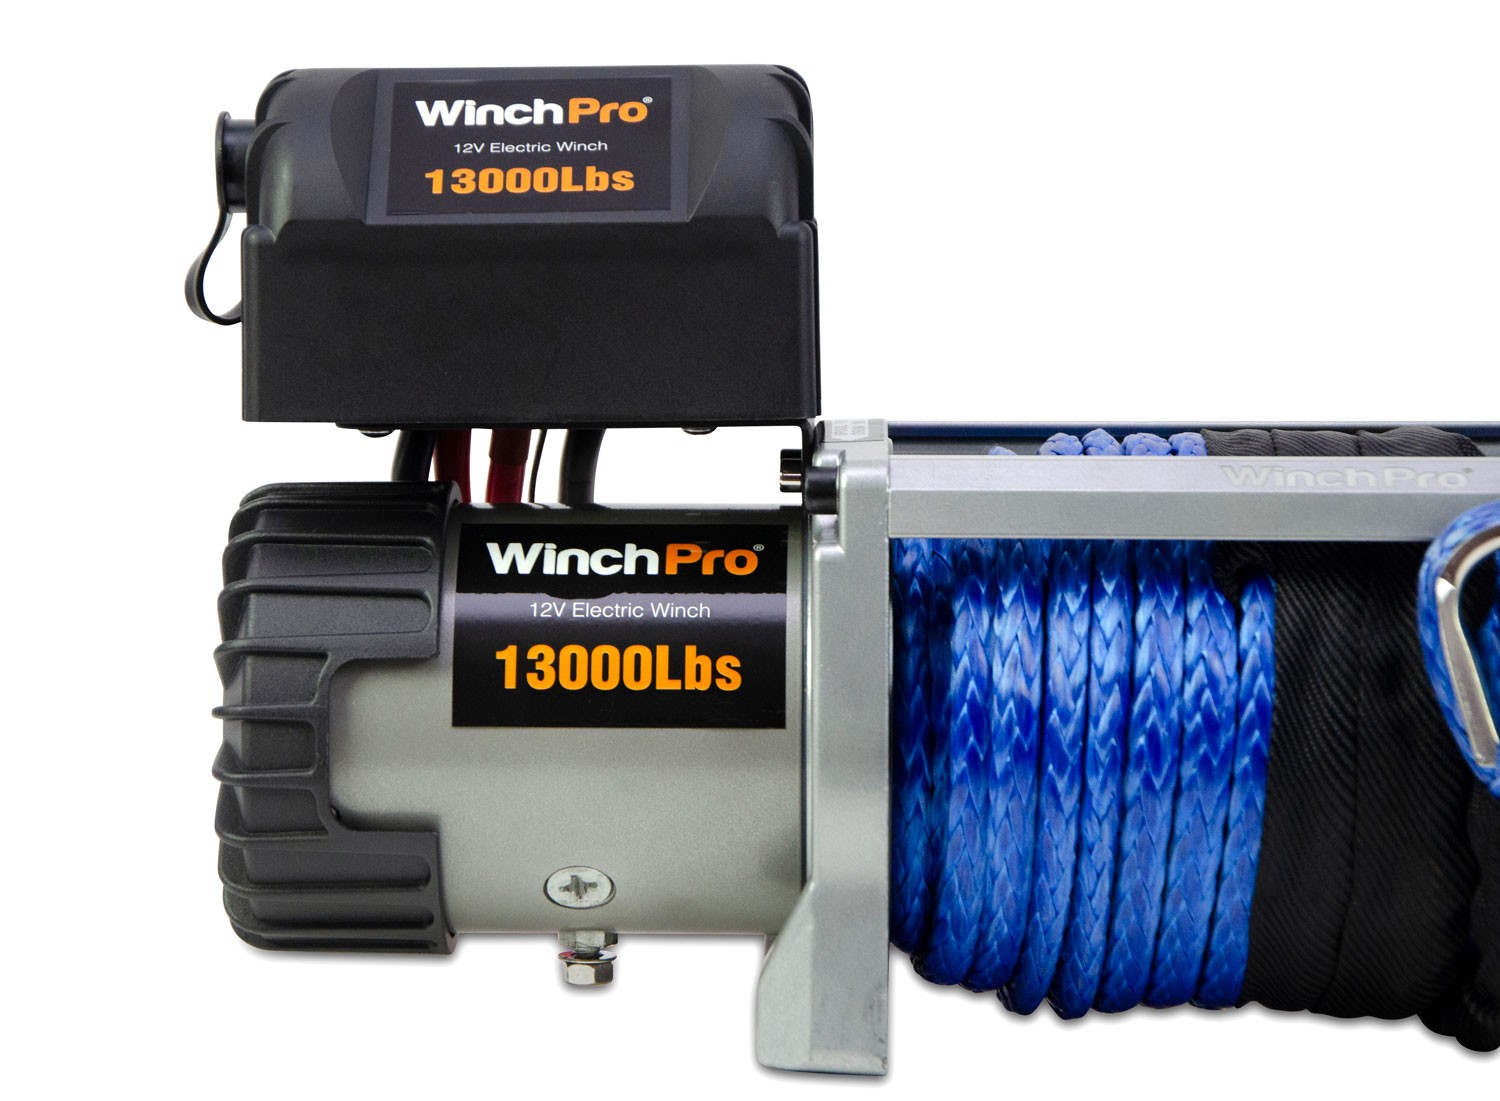 WinchPro - Cabrestante Eléctrico 12V 5900kg/13000lbs, 26m De Cuerda De  Dyneema Sintética, 2 Mandos A Distancia Incluidos (1 Inalámbrico, 1 Cable),  Para Offroad, 4x4, Remolques